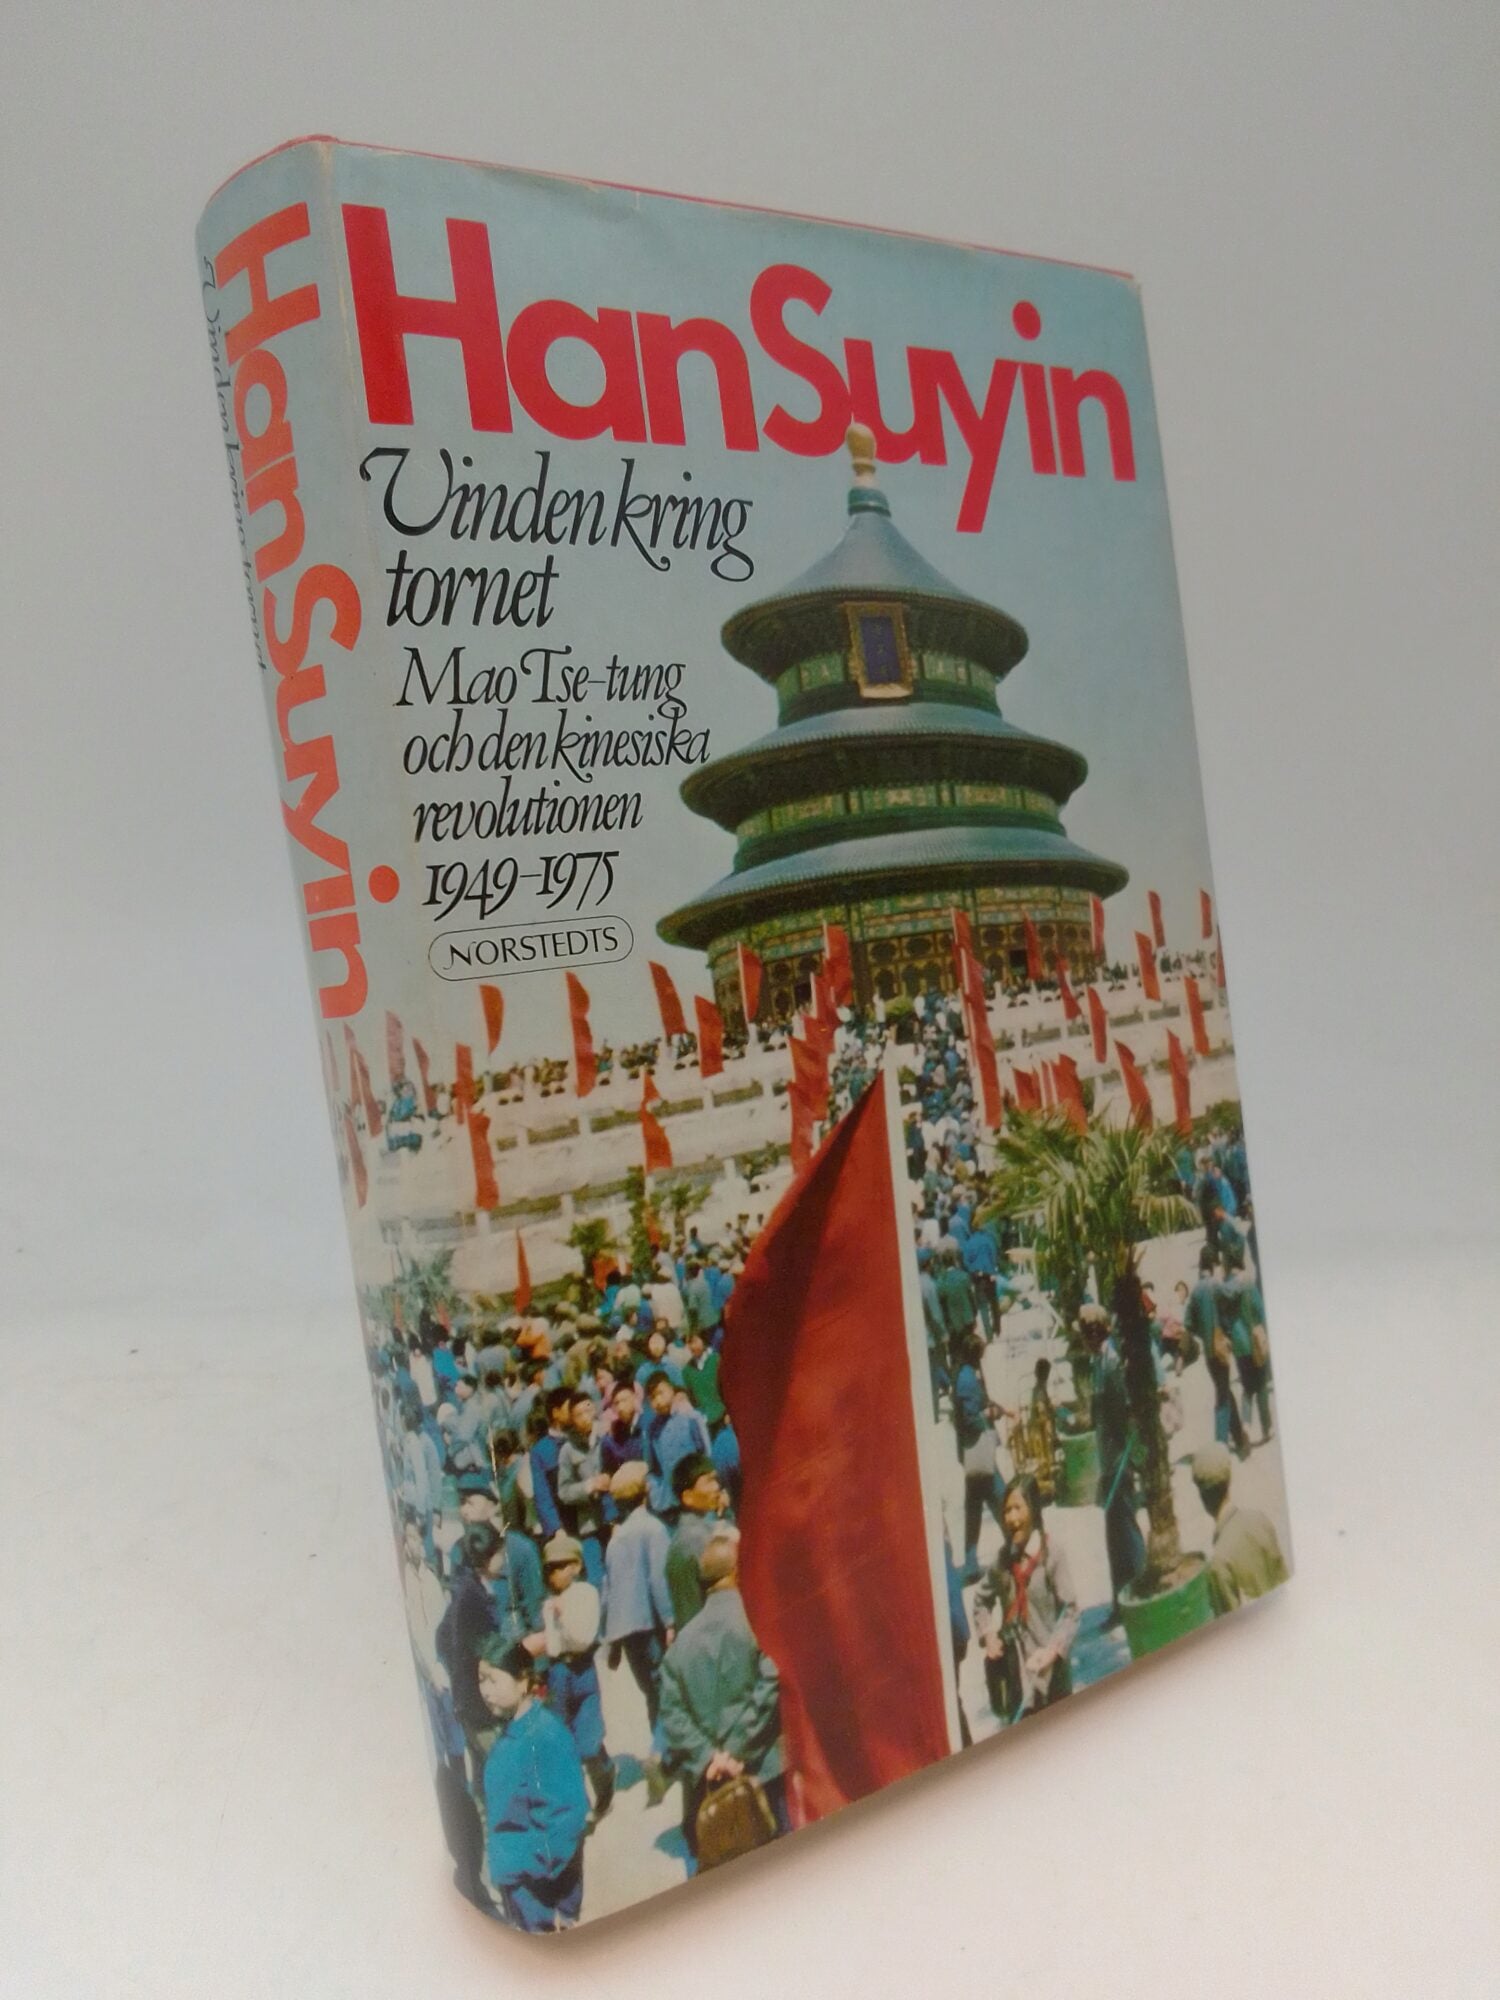 Han, Suyin | Vinden kring tornet : Mao Tse-tung och den kinesiska revolutionen 1949-1975